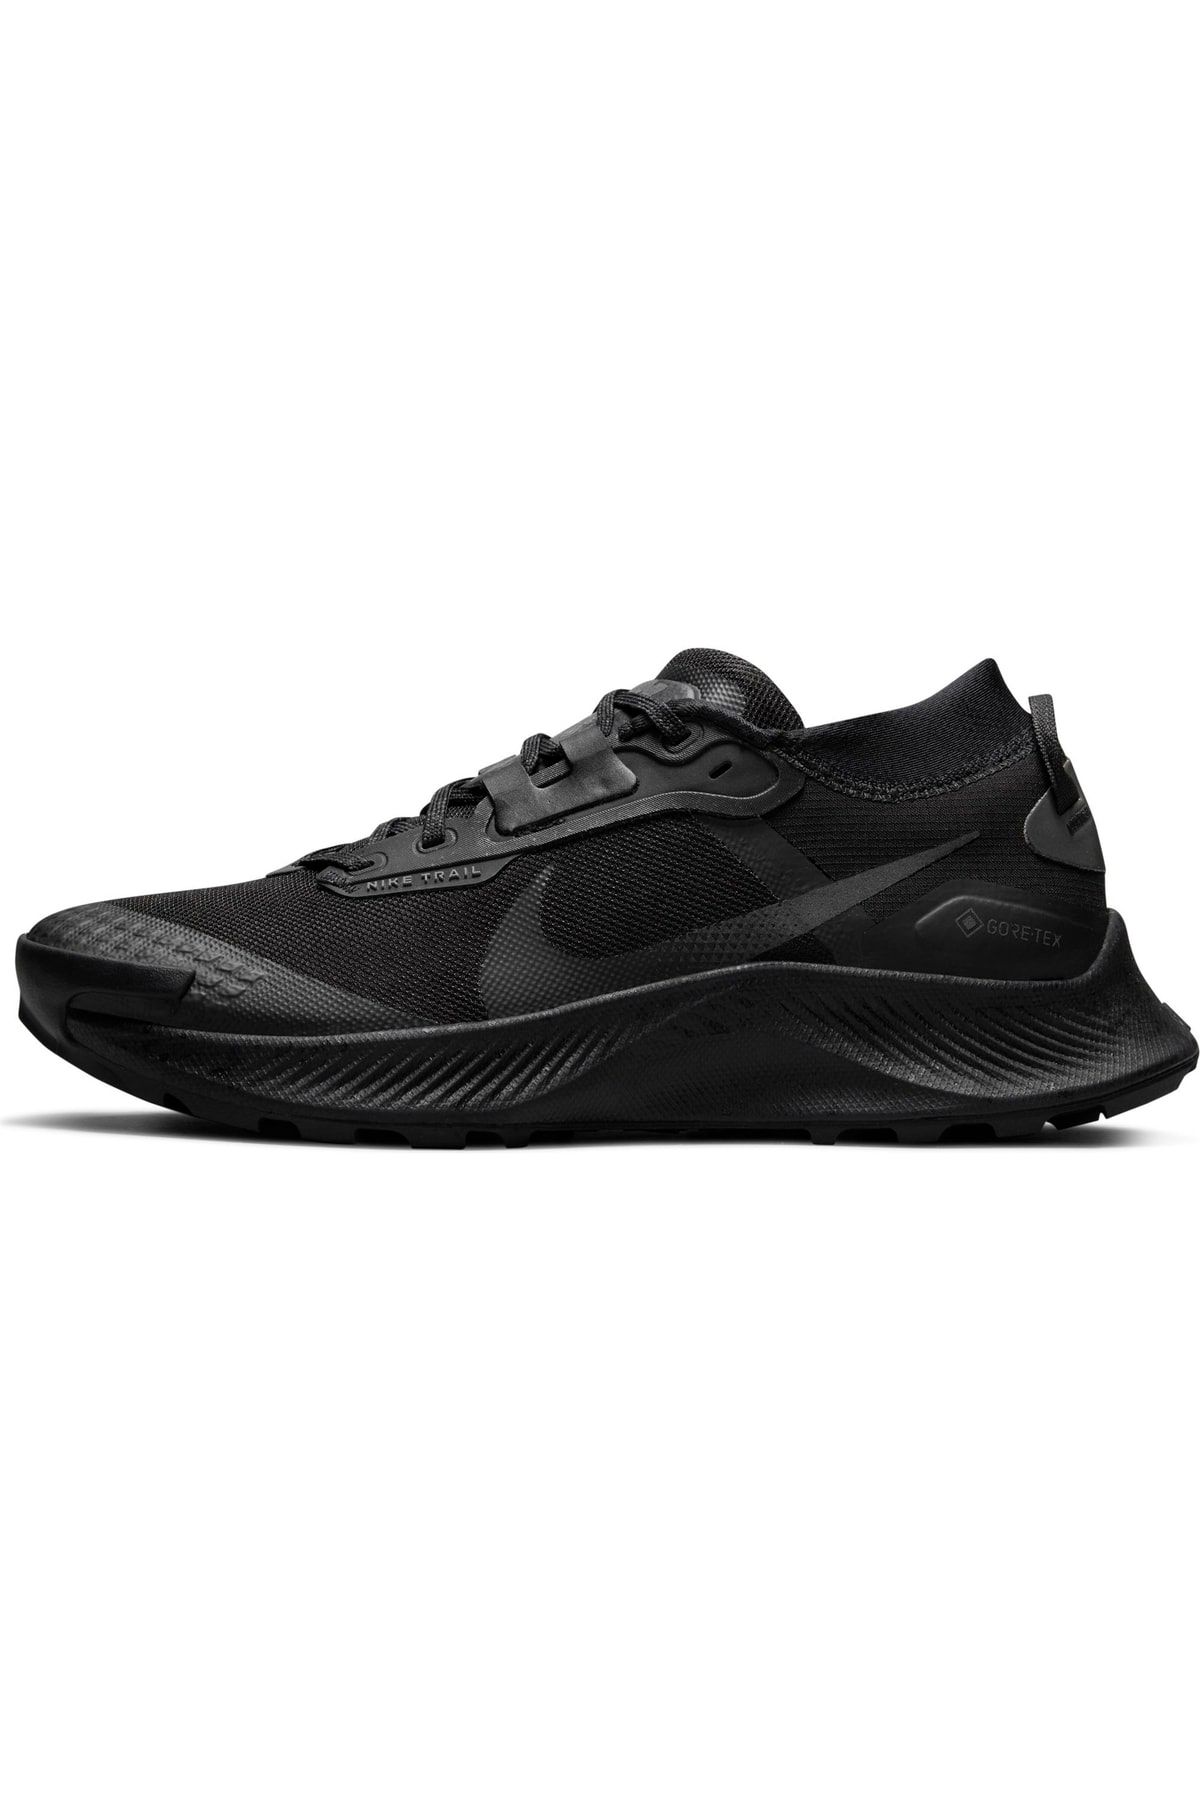 Nike Pegasus Trail 3 Gore-tex Running Spor Ayakkabı - Siyah